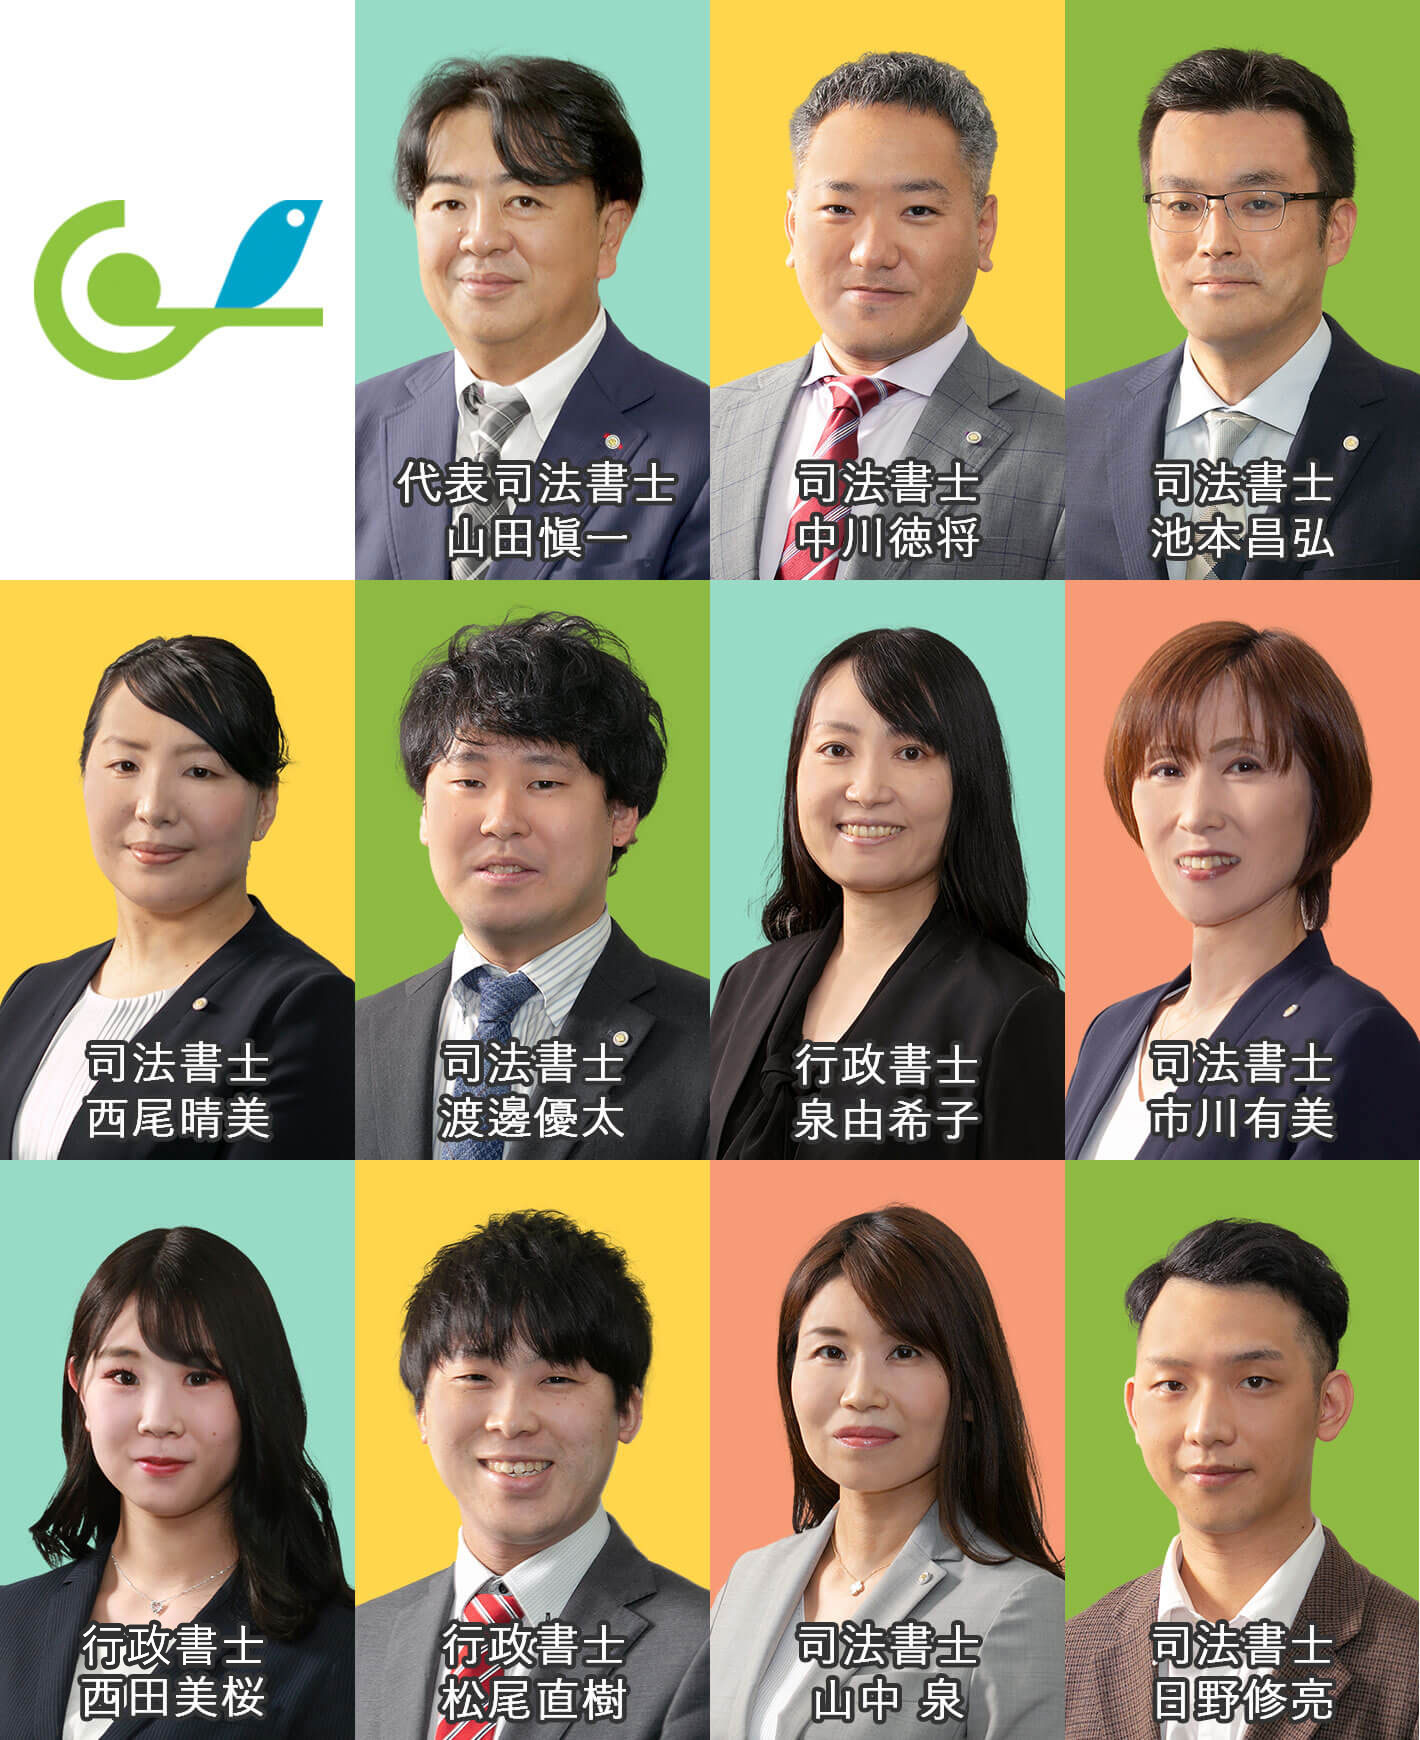 グリーン司法書士法人運営の大阪相続相談所の専門家をご紹介。東京近郊の相続相談も受付中です。